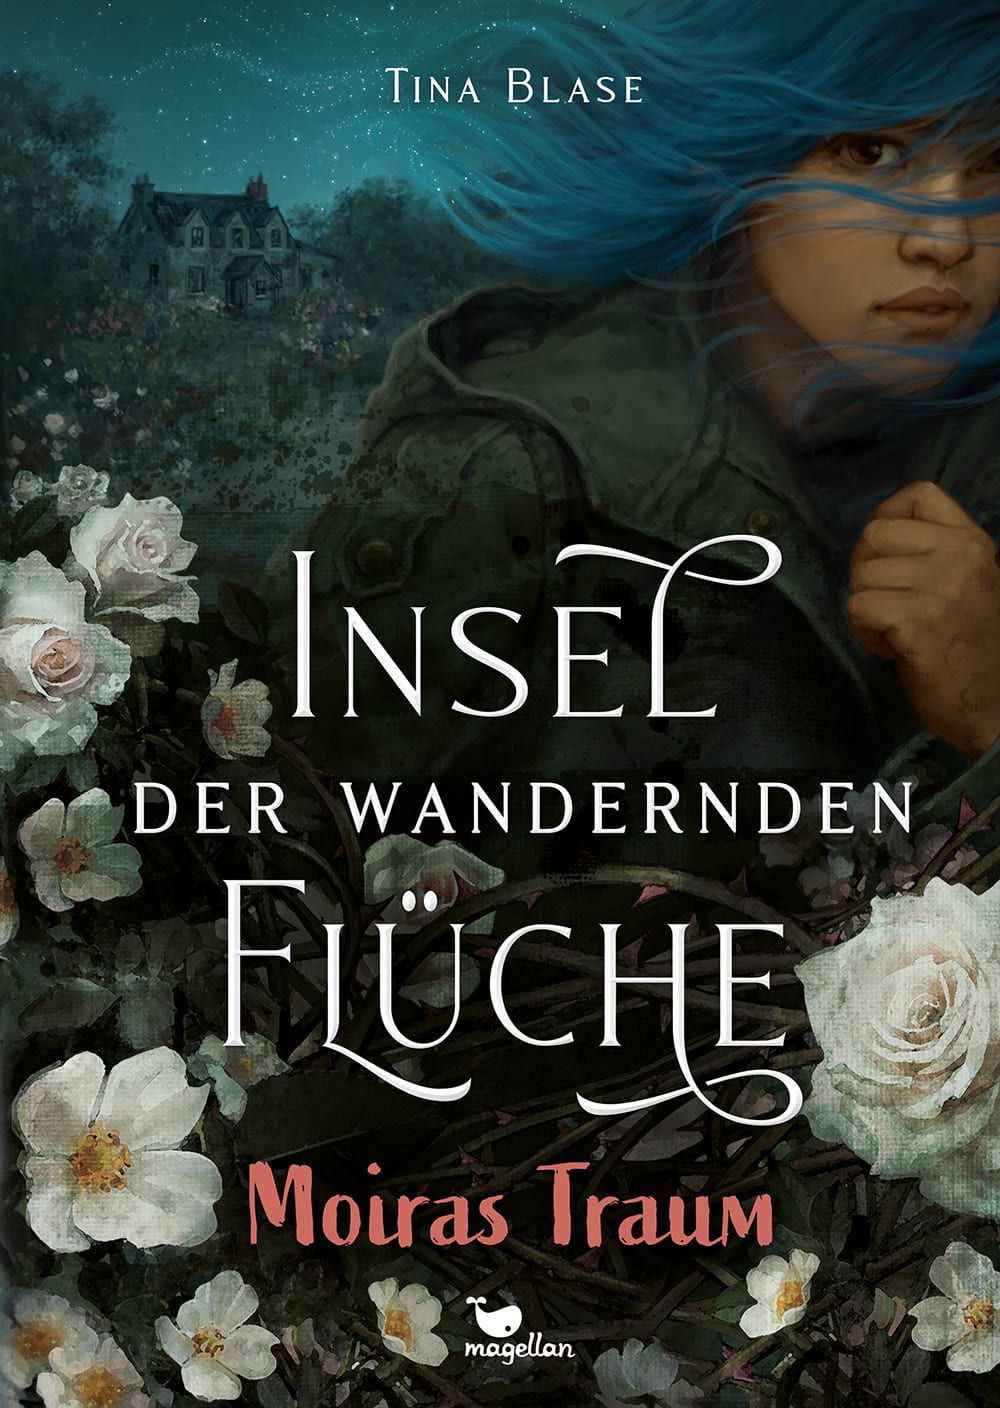 Cover, düster in dunklen Farben gehalten, Mädchen mit blauen Haaren schaut aus dem Bild, umgeben von weißen Rosen